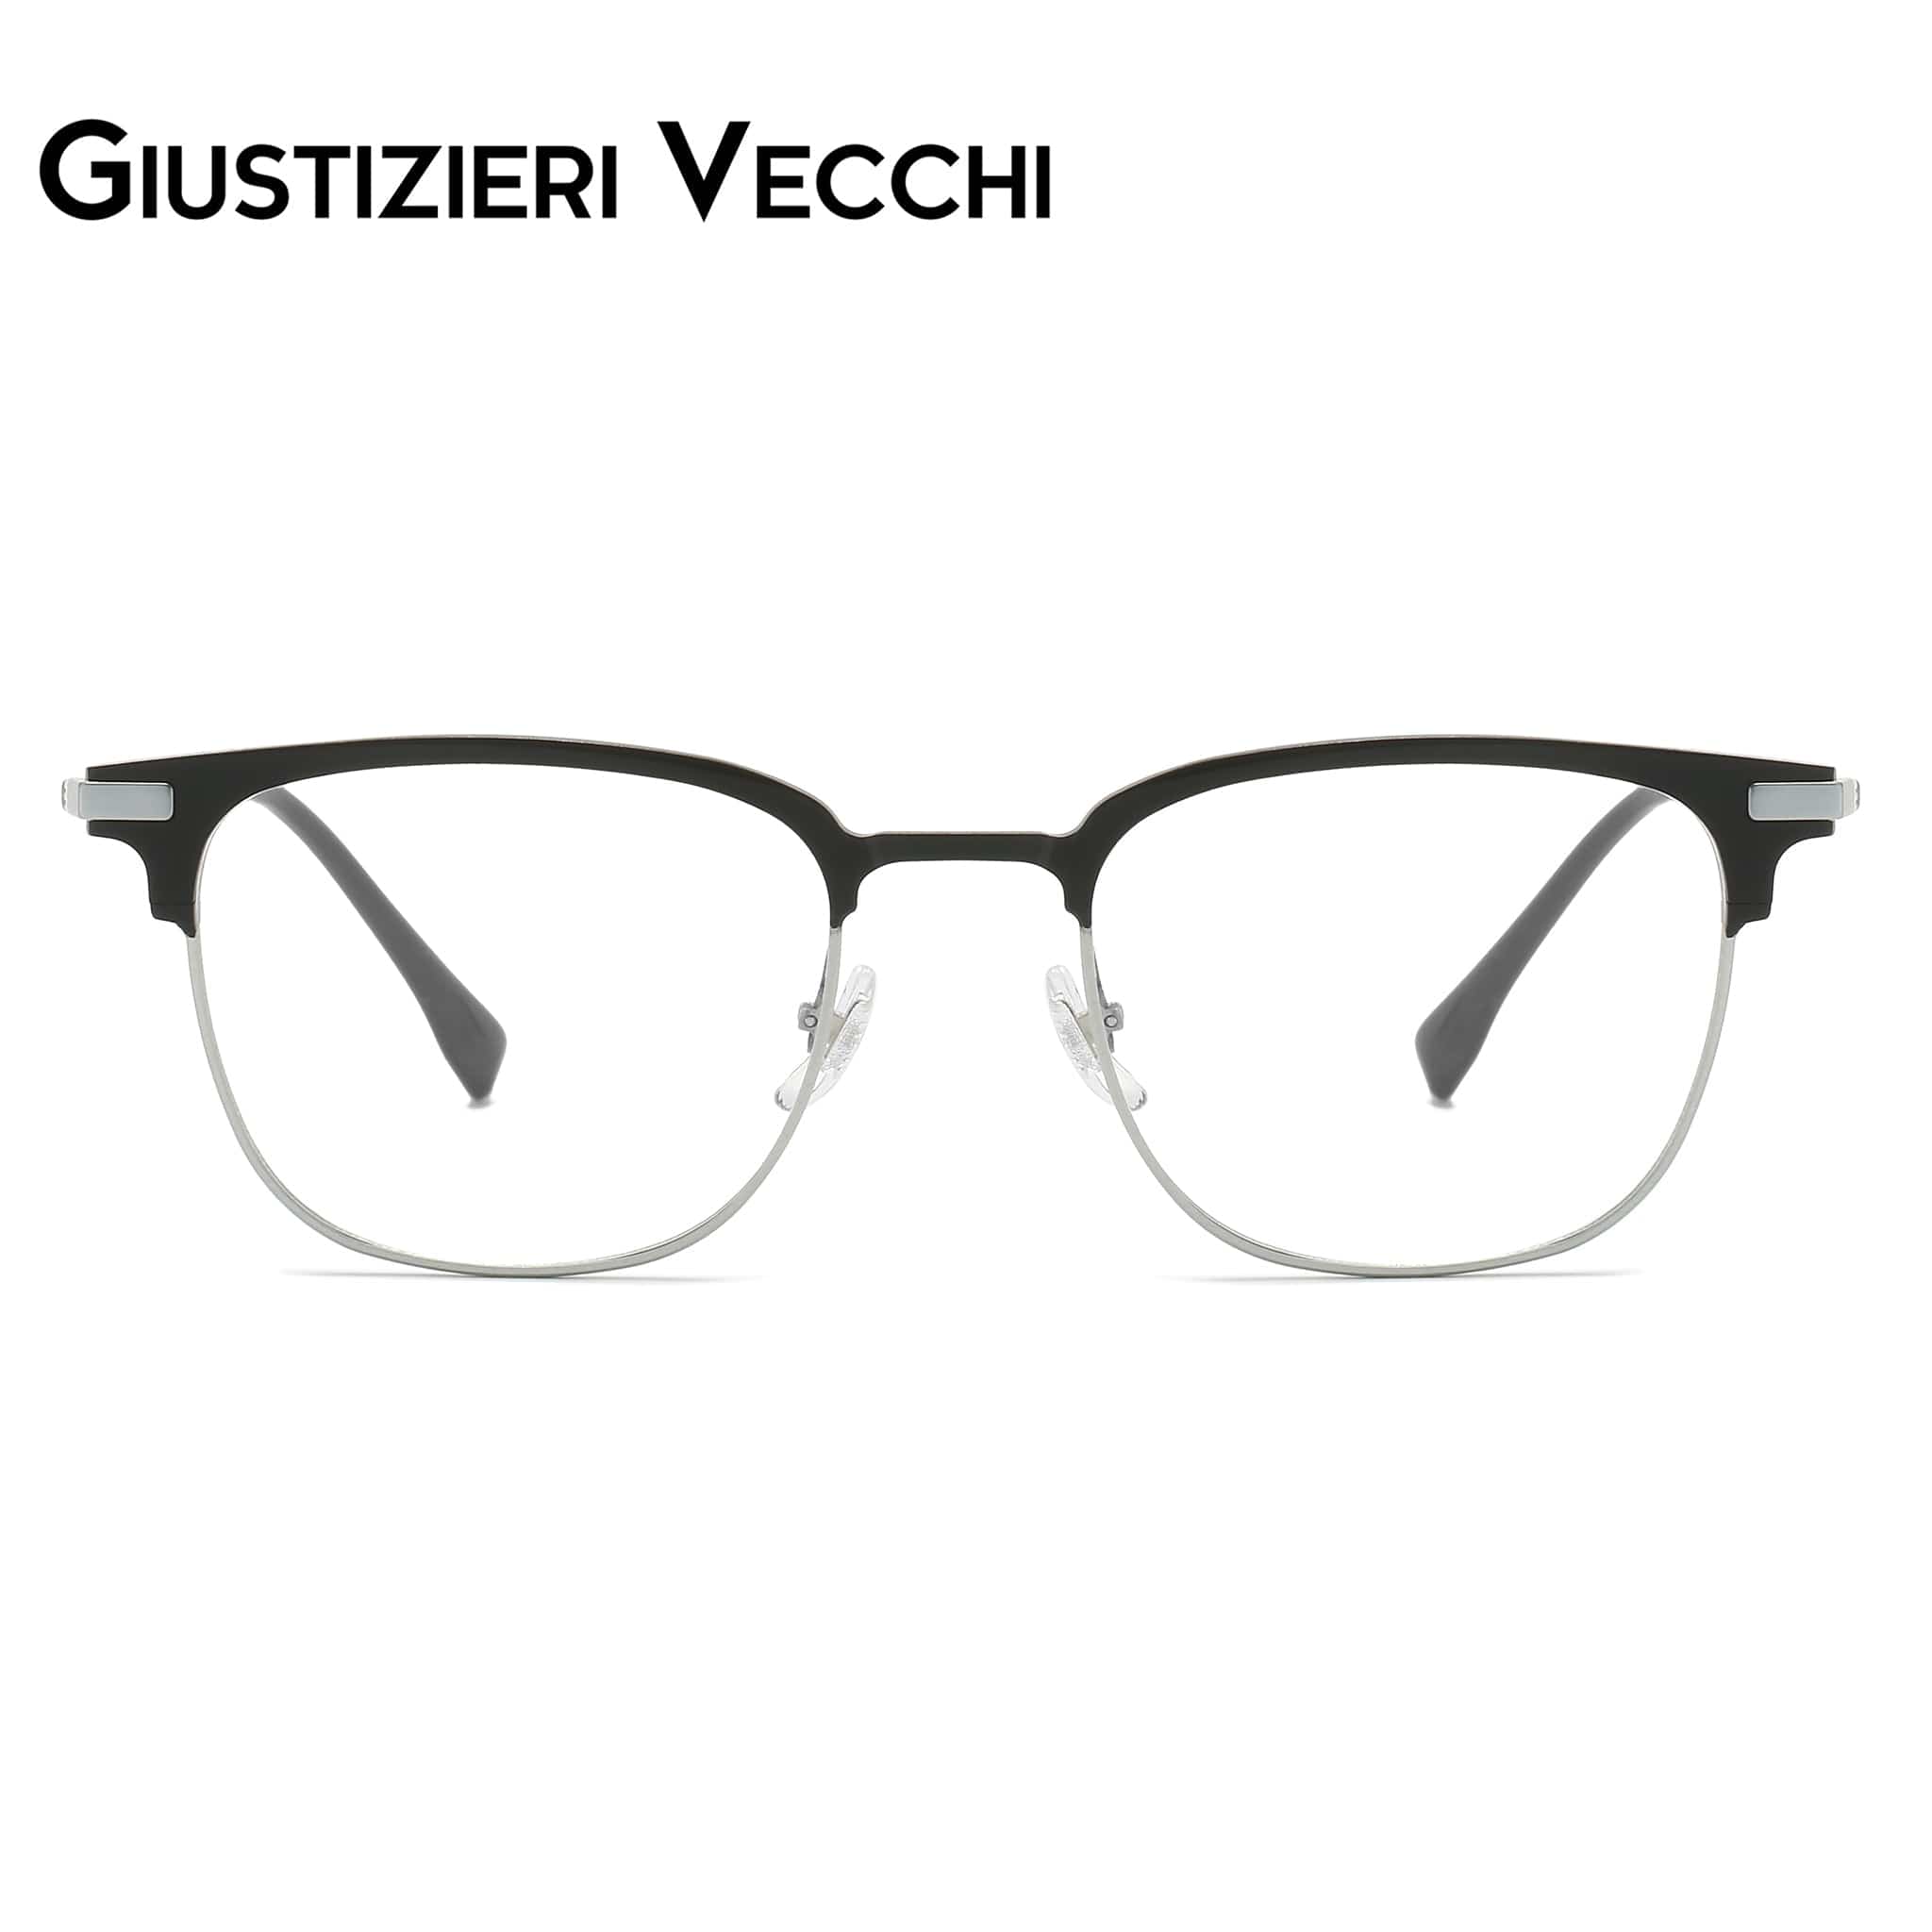 GIUSTIZIERI VECCHI Eyeglasses Small / Black with Silver FireRush Duo